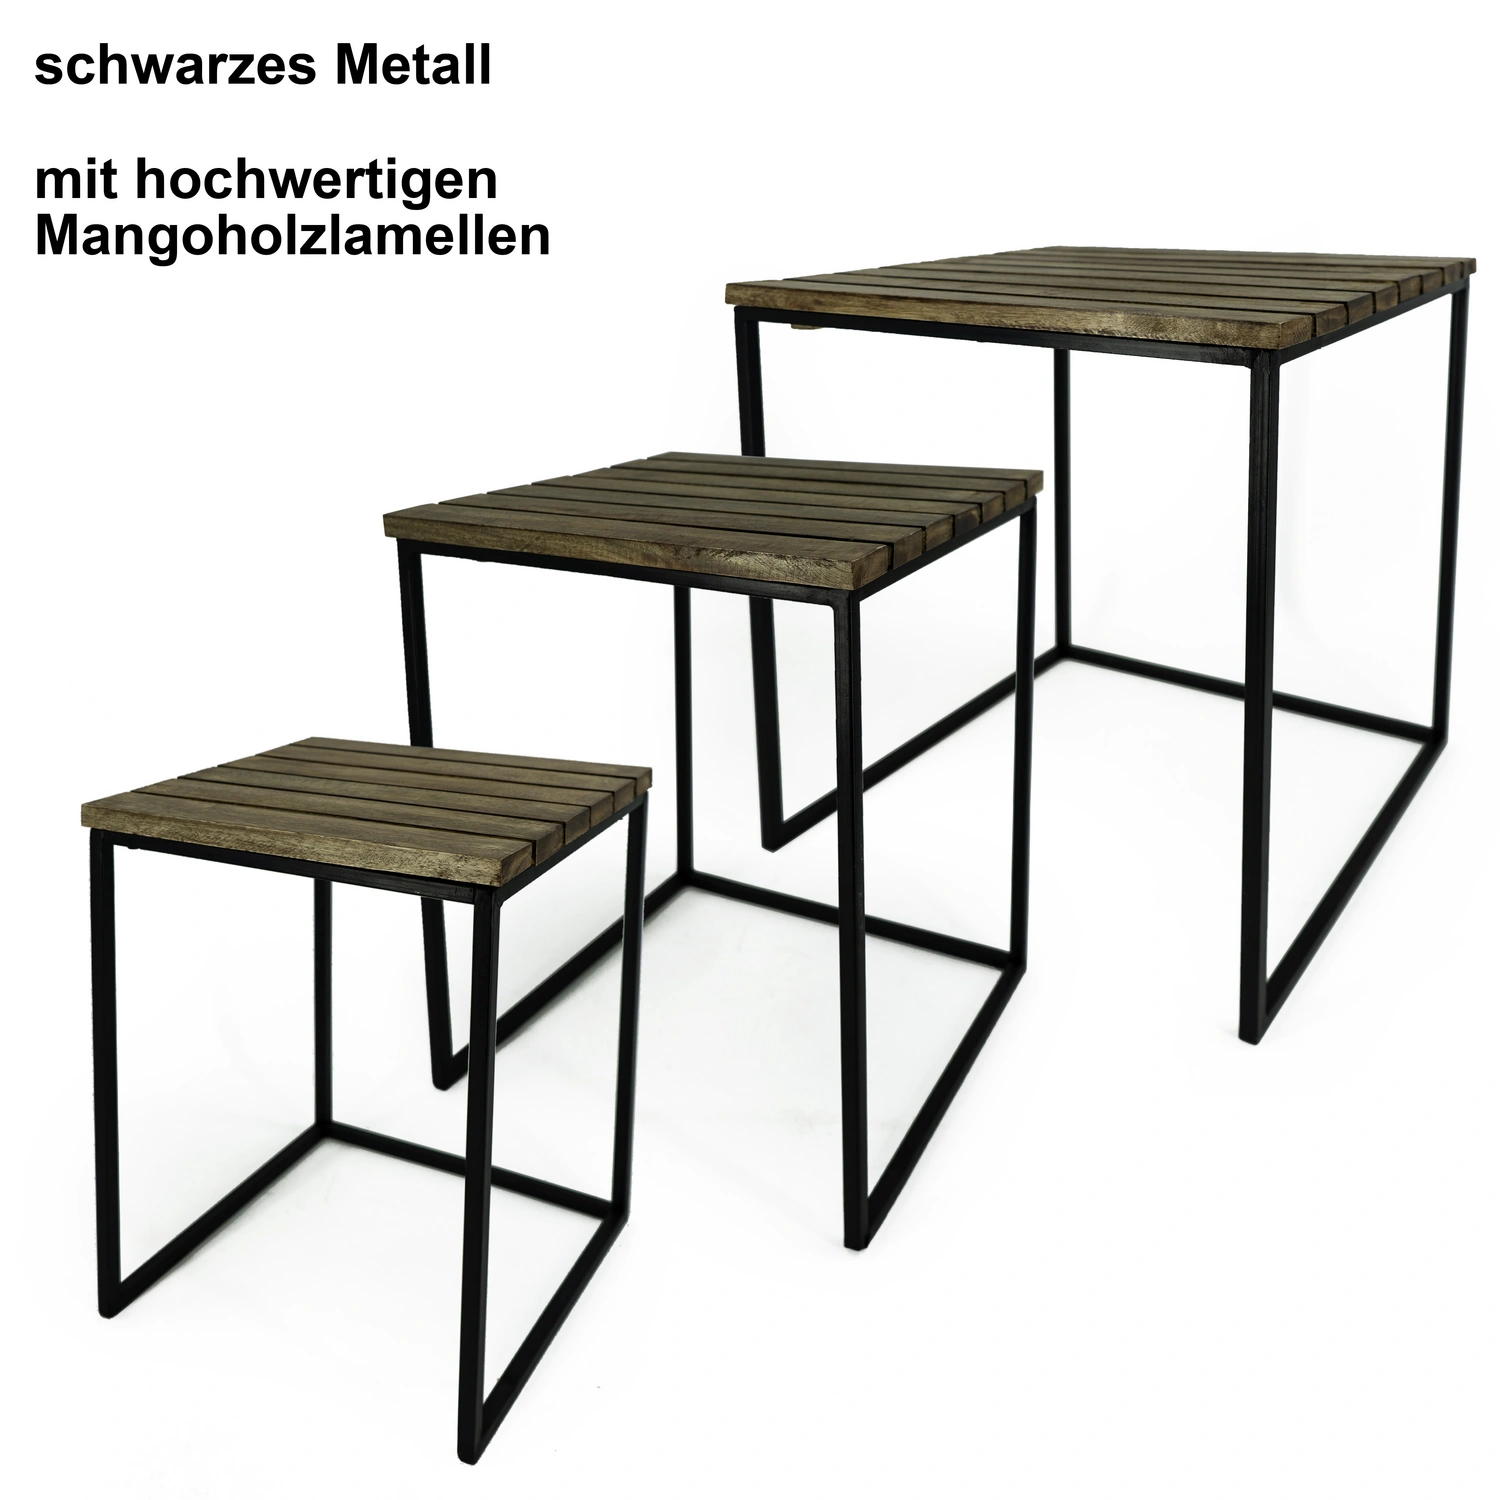 NOOR living Beistelltisch-Set, BxHxL: 39 Metall/Mangoholz x 54 cm, 39 x